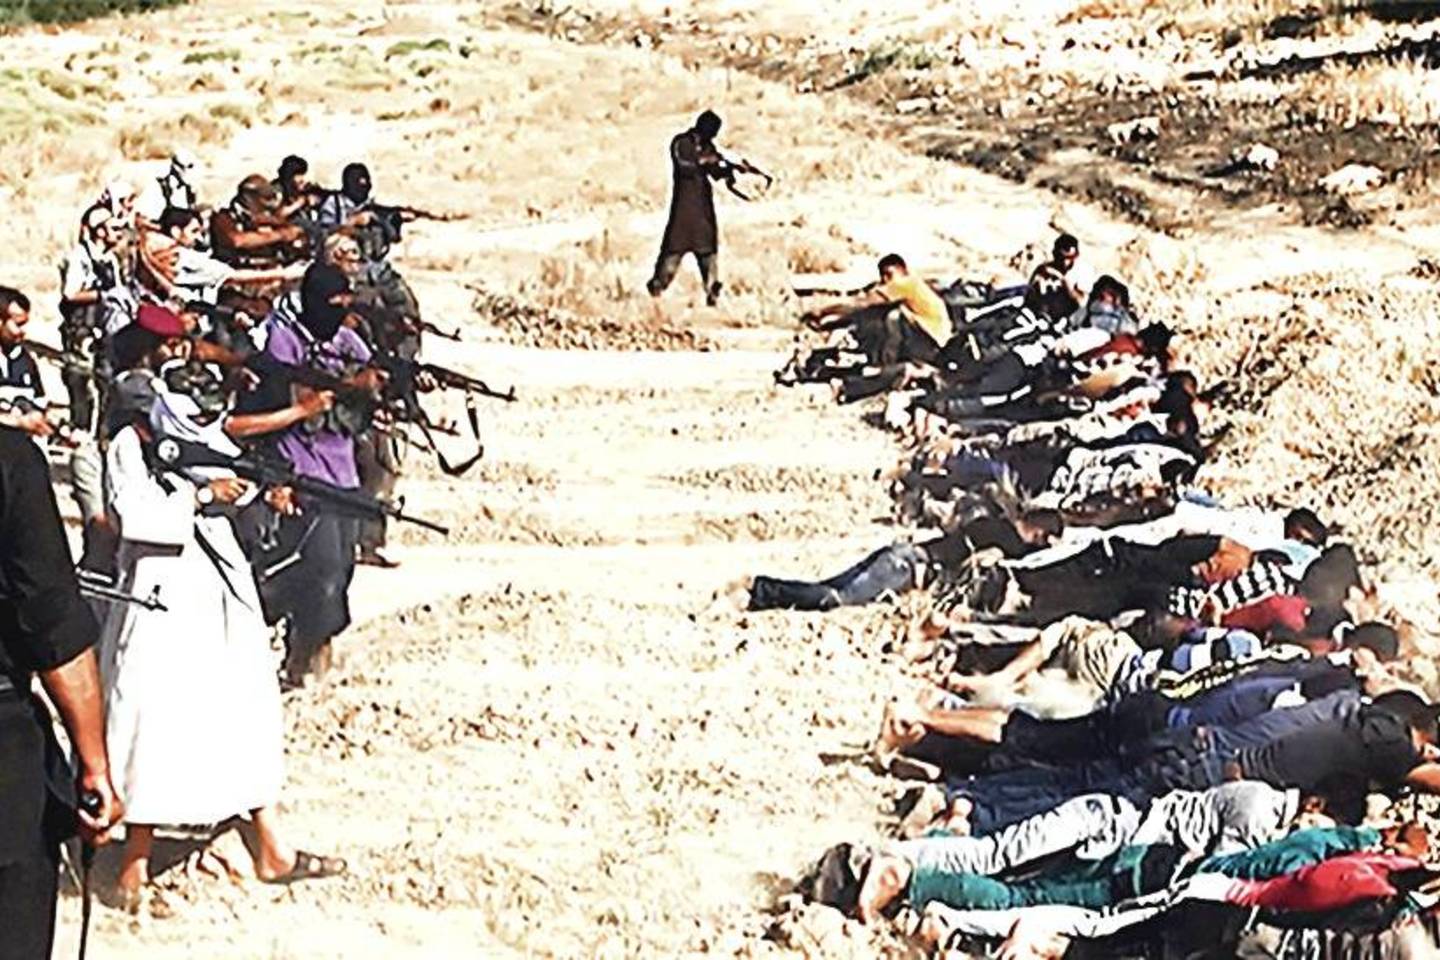 Įsisiautėję „Islamo valstybės“ teroristai žudo ir musulmonus (kairėje), ir krikščionis, tačiau grupuotės lyderis A.B.al-Baghdadi neslepia, kad jo tikslas – tikros islamistinės šalies – kalifato sukūrimas.